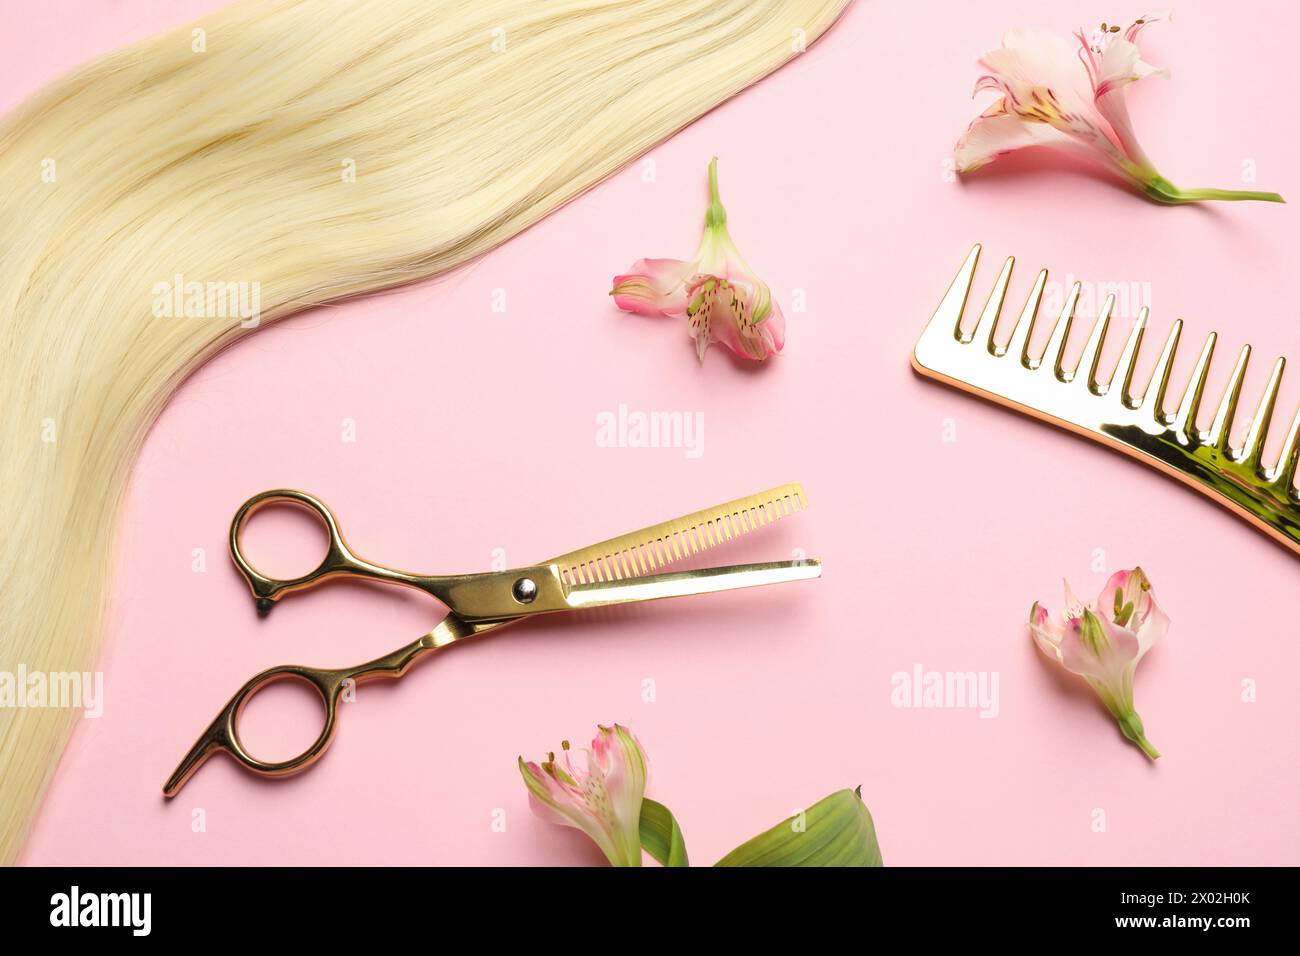 Friseurwerkzeuge. Blondes Haarschloss, Kamm, Schere und Blumen auf rosa Hintergrund, flach Stockfoto